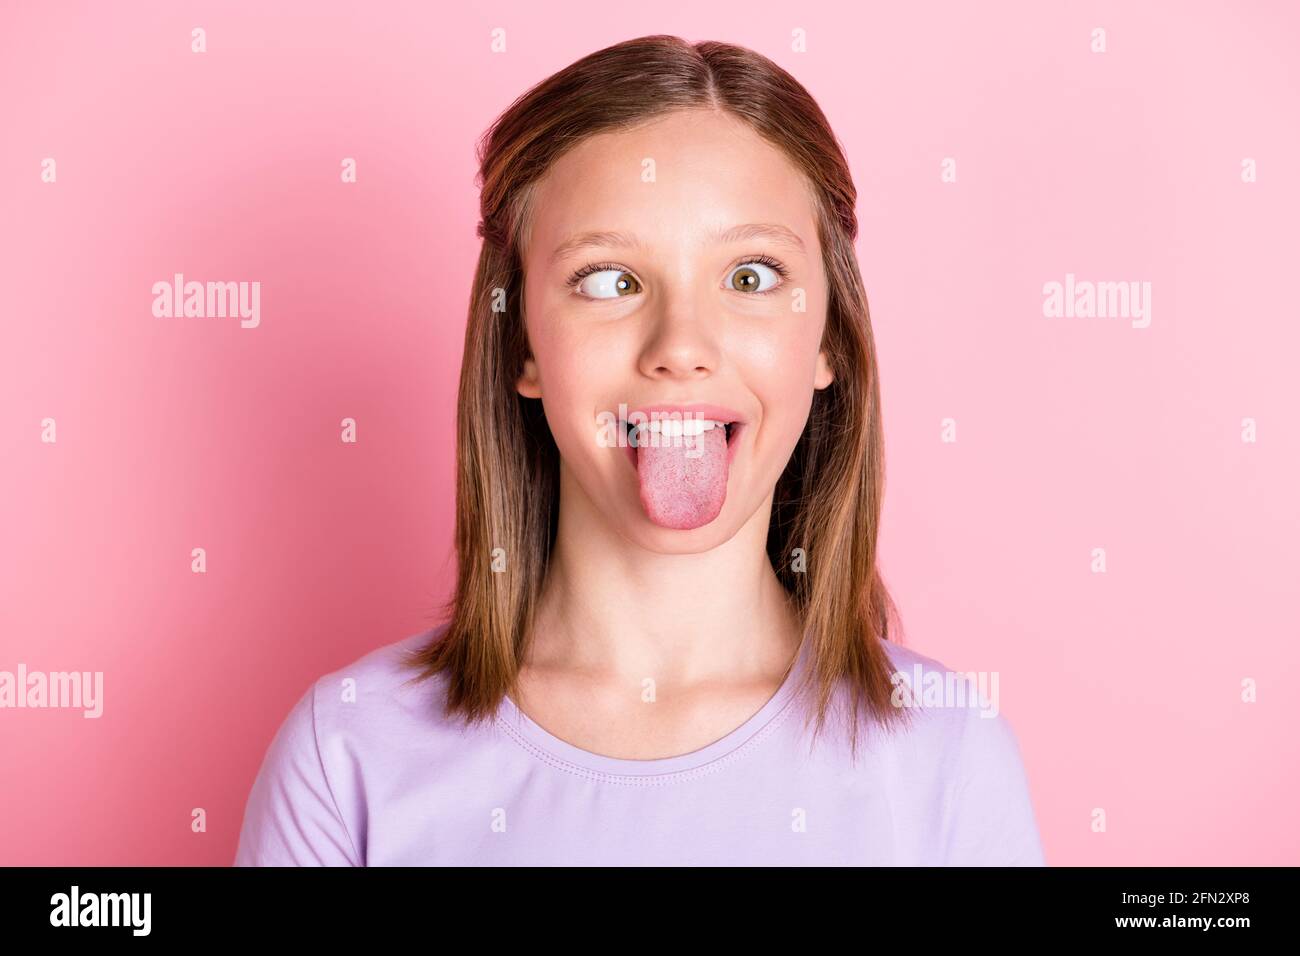 Foto von lustigen kindischen Teenager-Mädchen machen funky Face Stick Zunge aus isoliert auf pastellrosa Hintergrund Stockfoto